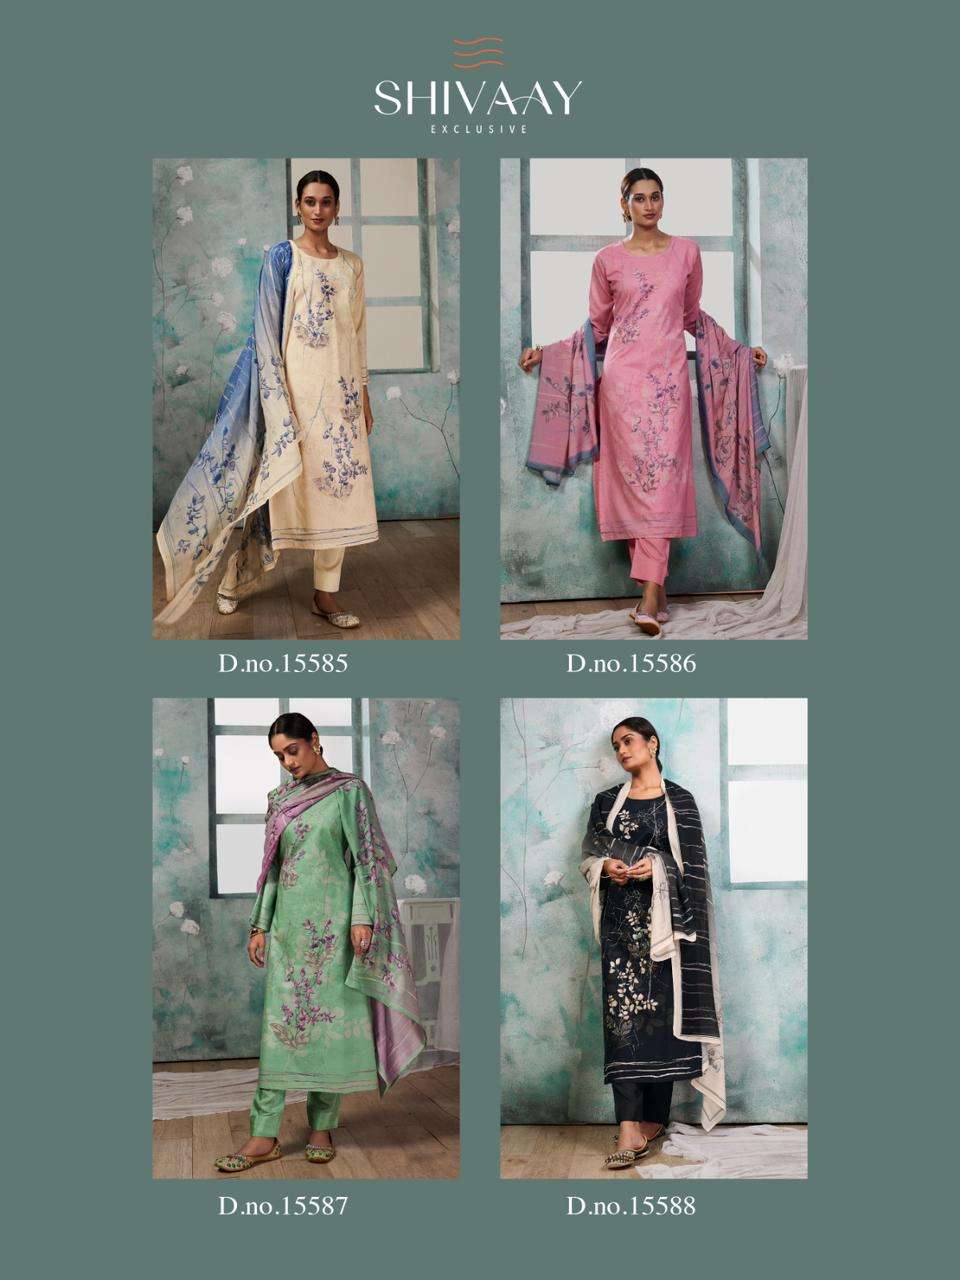 SHIVAAY PRACHI Dress Materials Wholesale catalog